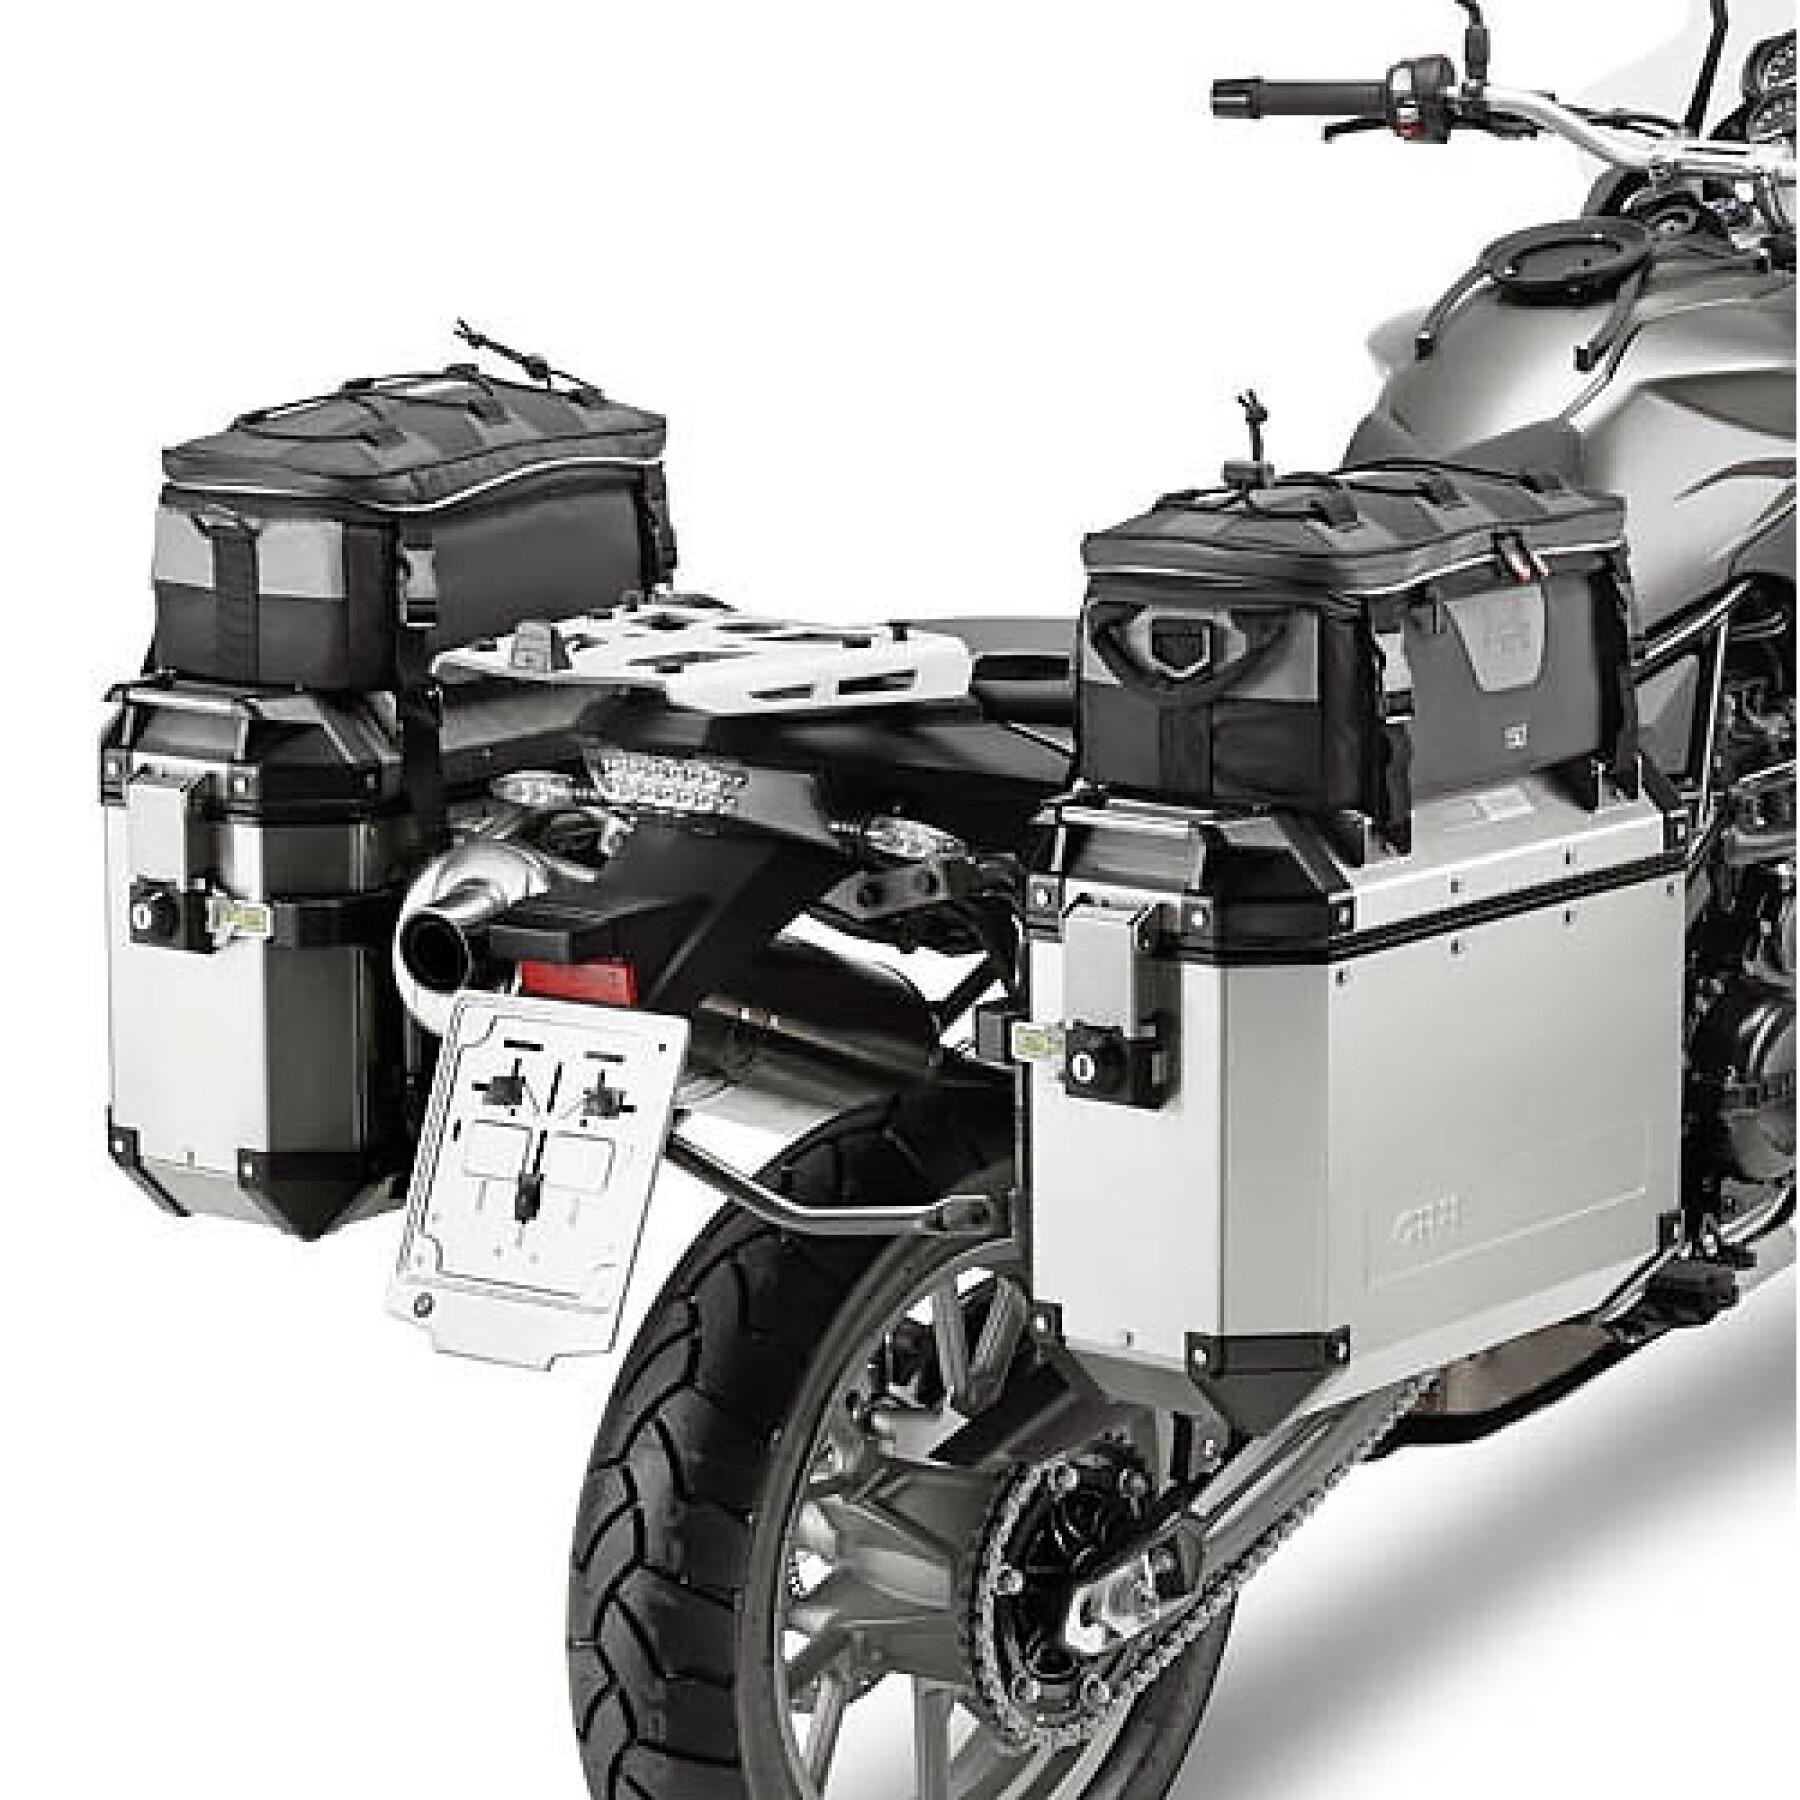 Support valises latérales moto Givi Monokey Cam-Side Bmw F 650 Gs/F 800 Gs (08 À 17)